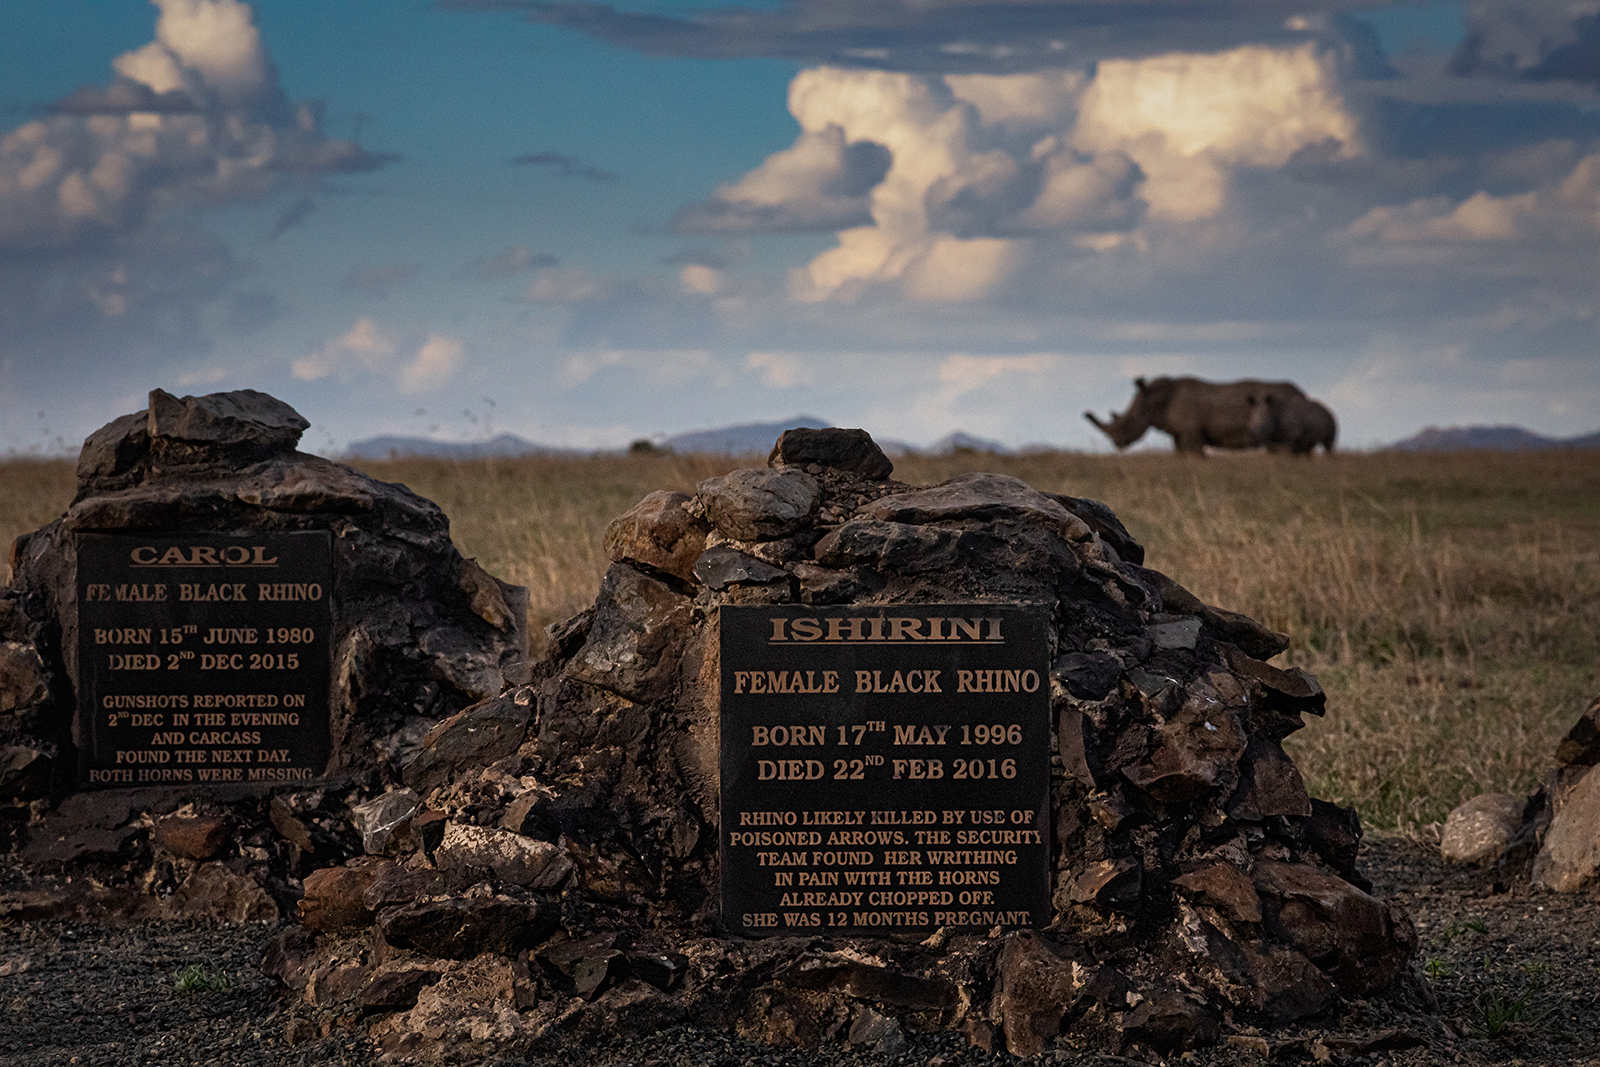 Raganosių kapinės Ol Pejeta konservatorijoje.  Tik du iš 22 gamtosaugos raganosių mirė dėl natūralių priežasčių.  Kitus nužudė brakonieriai.